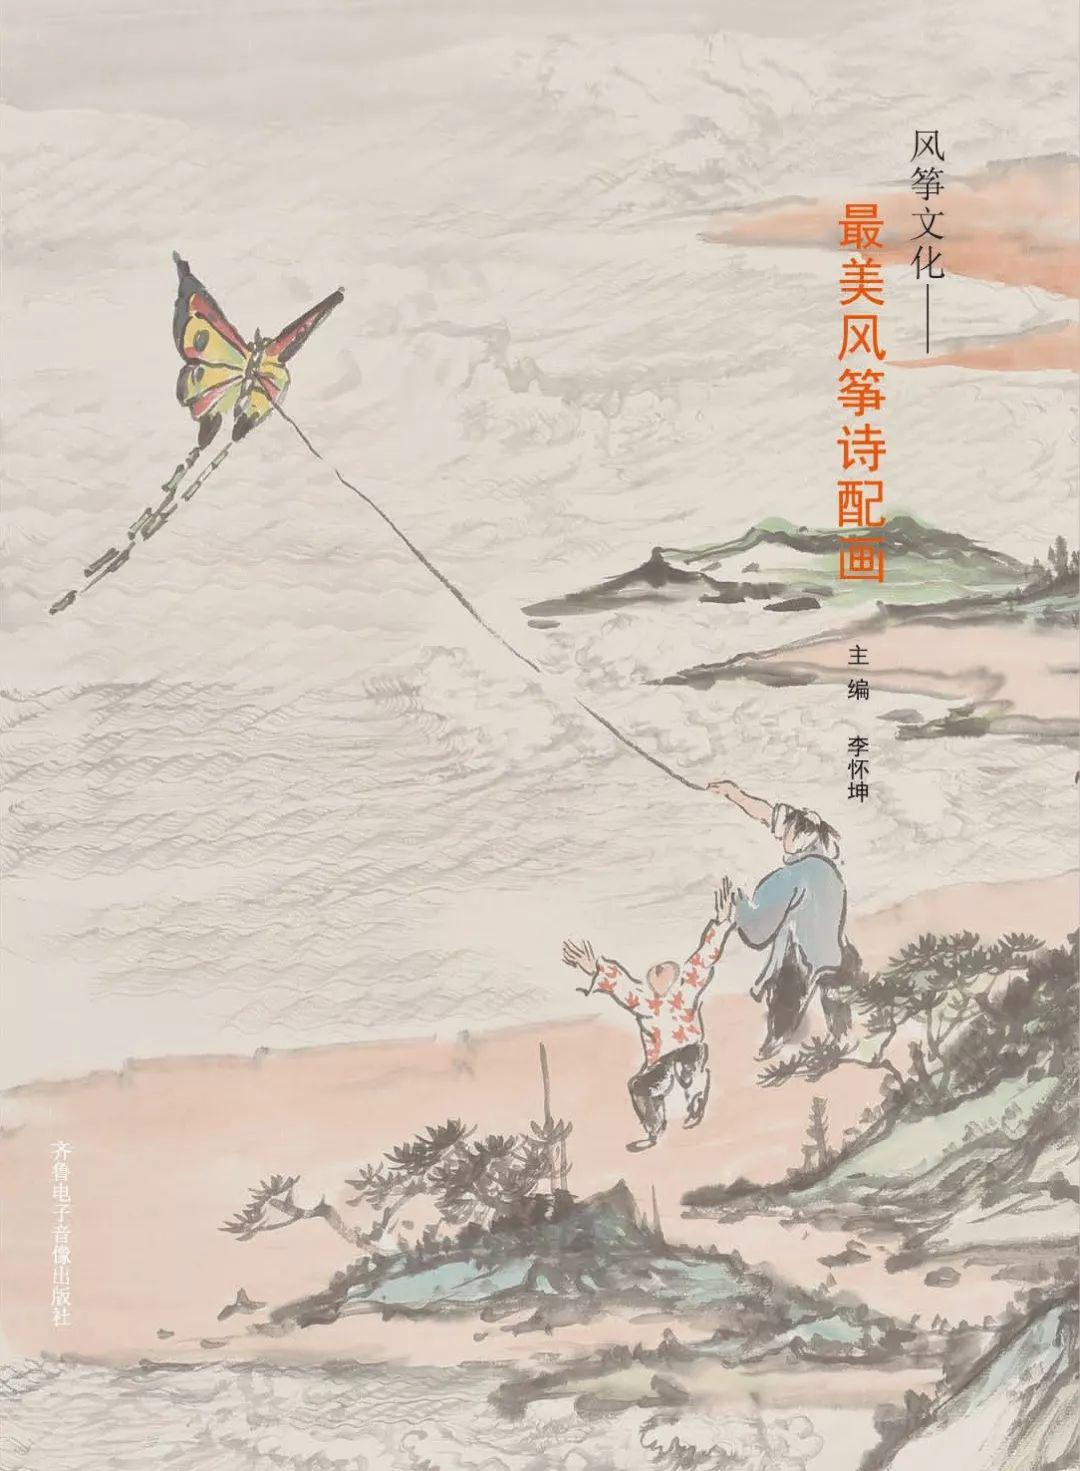 《风筝文化最美风筝诗配画》连载之七毕德瑞篇